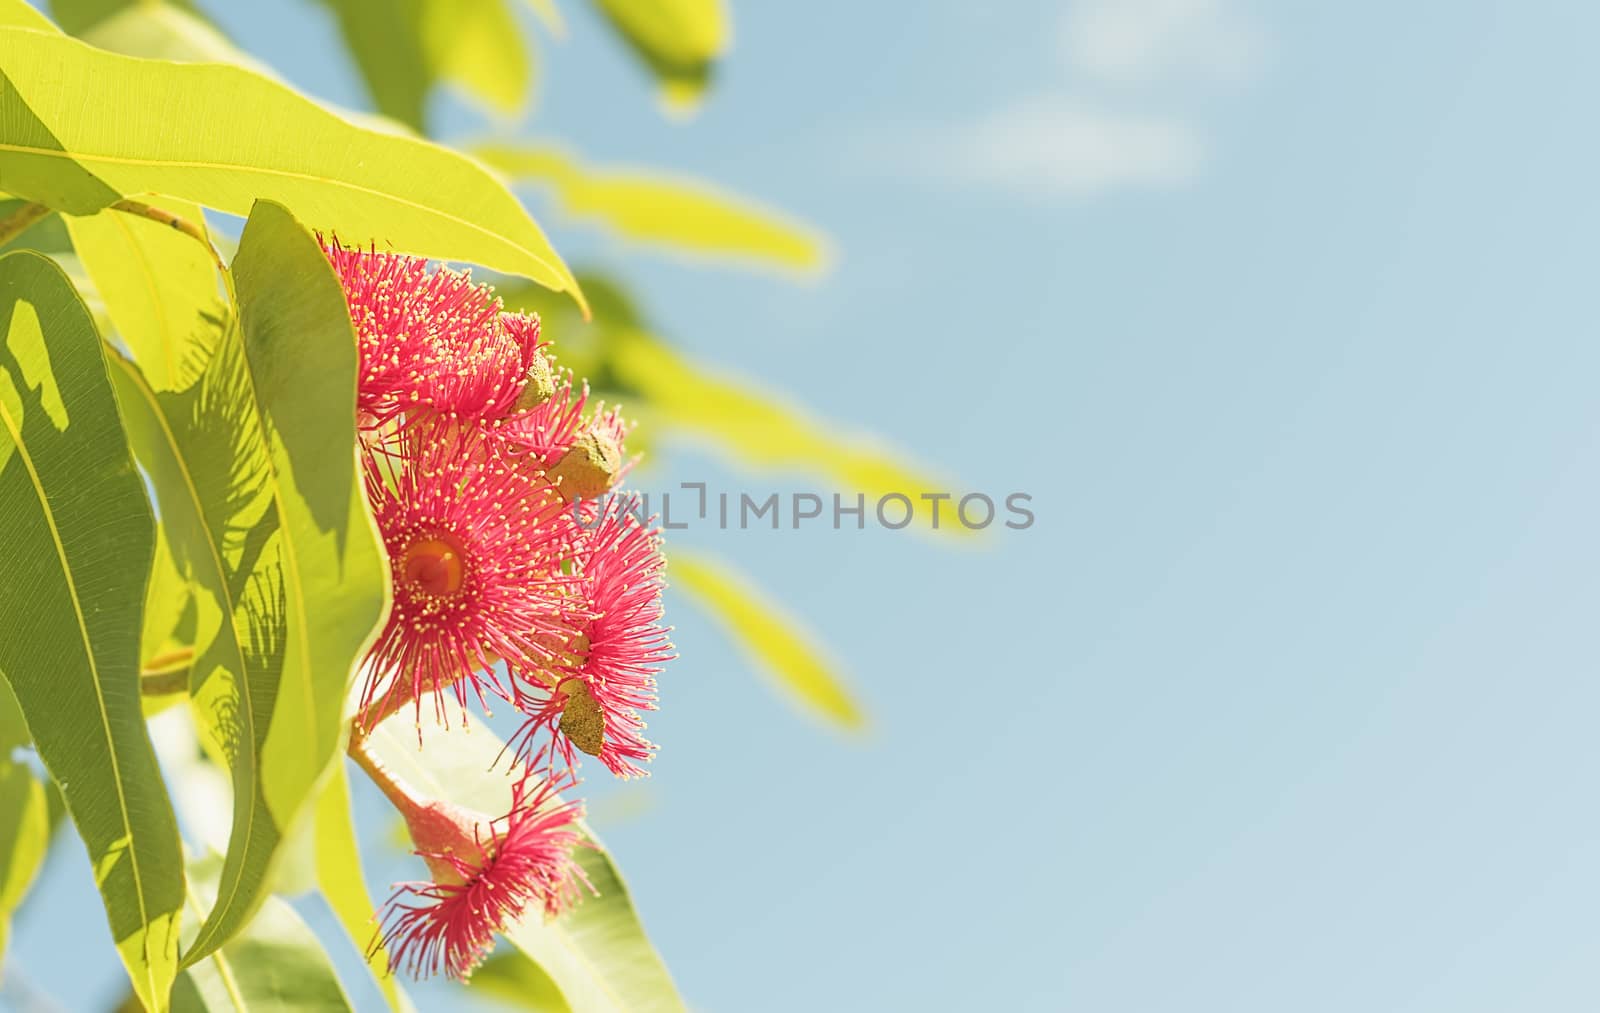 Australian red gum flowers in sunlight by sherj